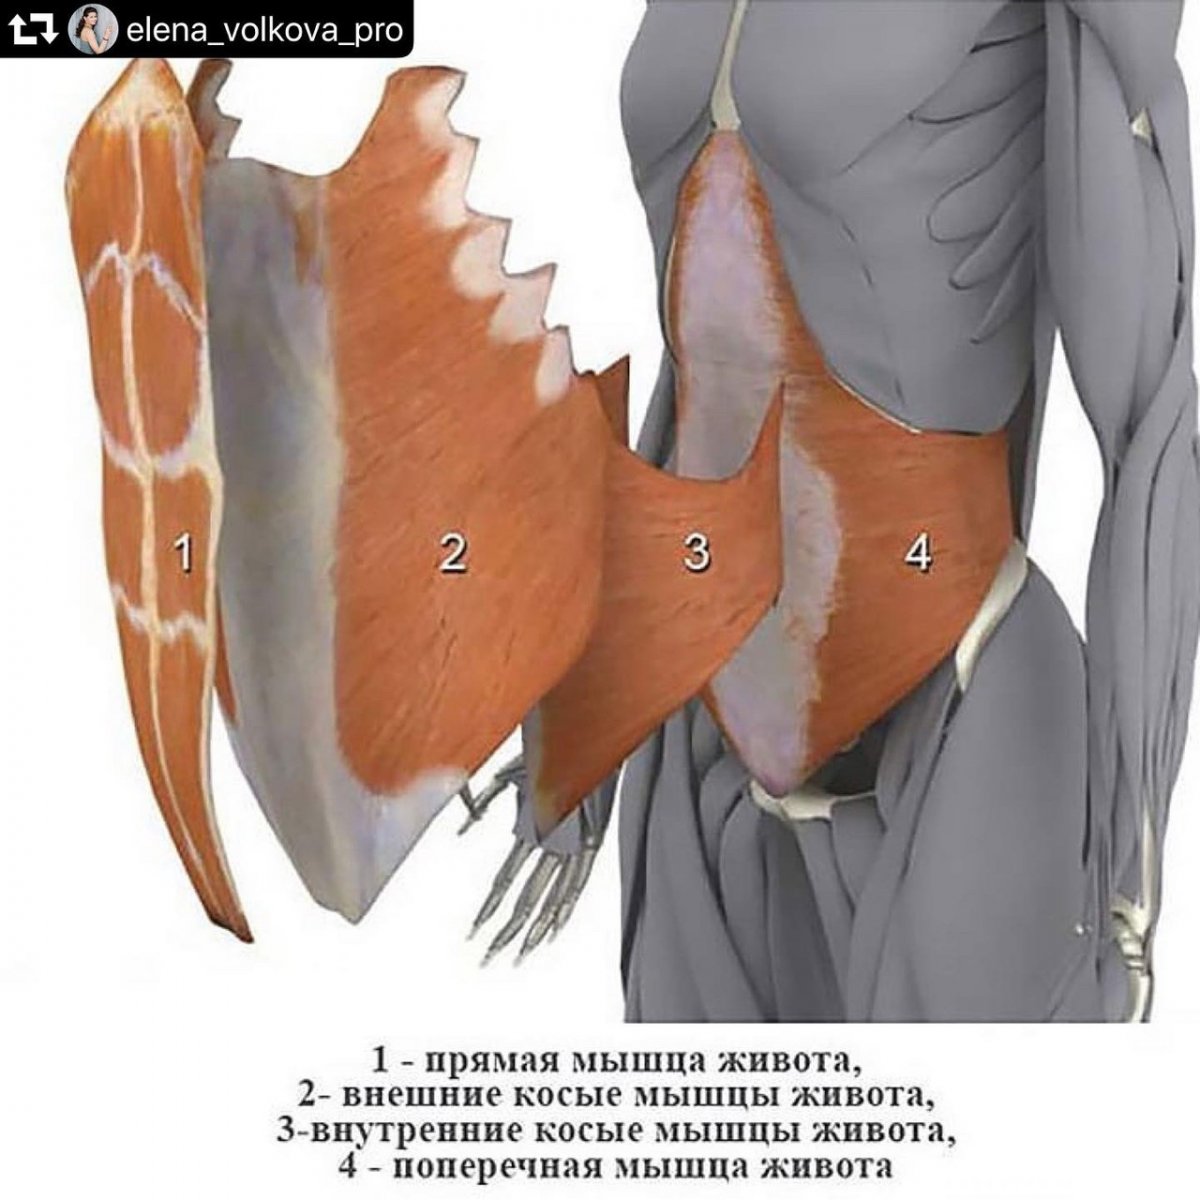 Поперечная мышца живота анатомия